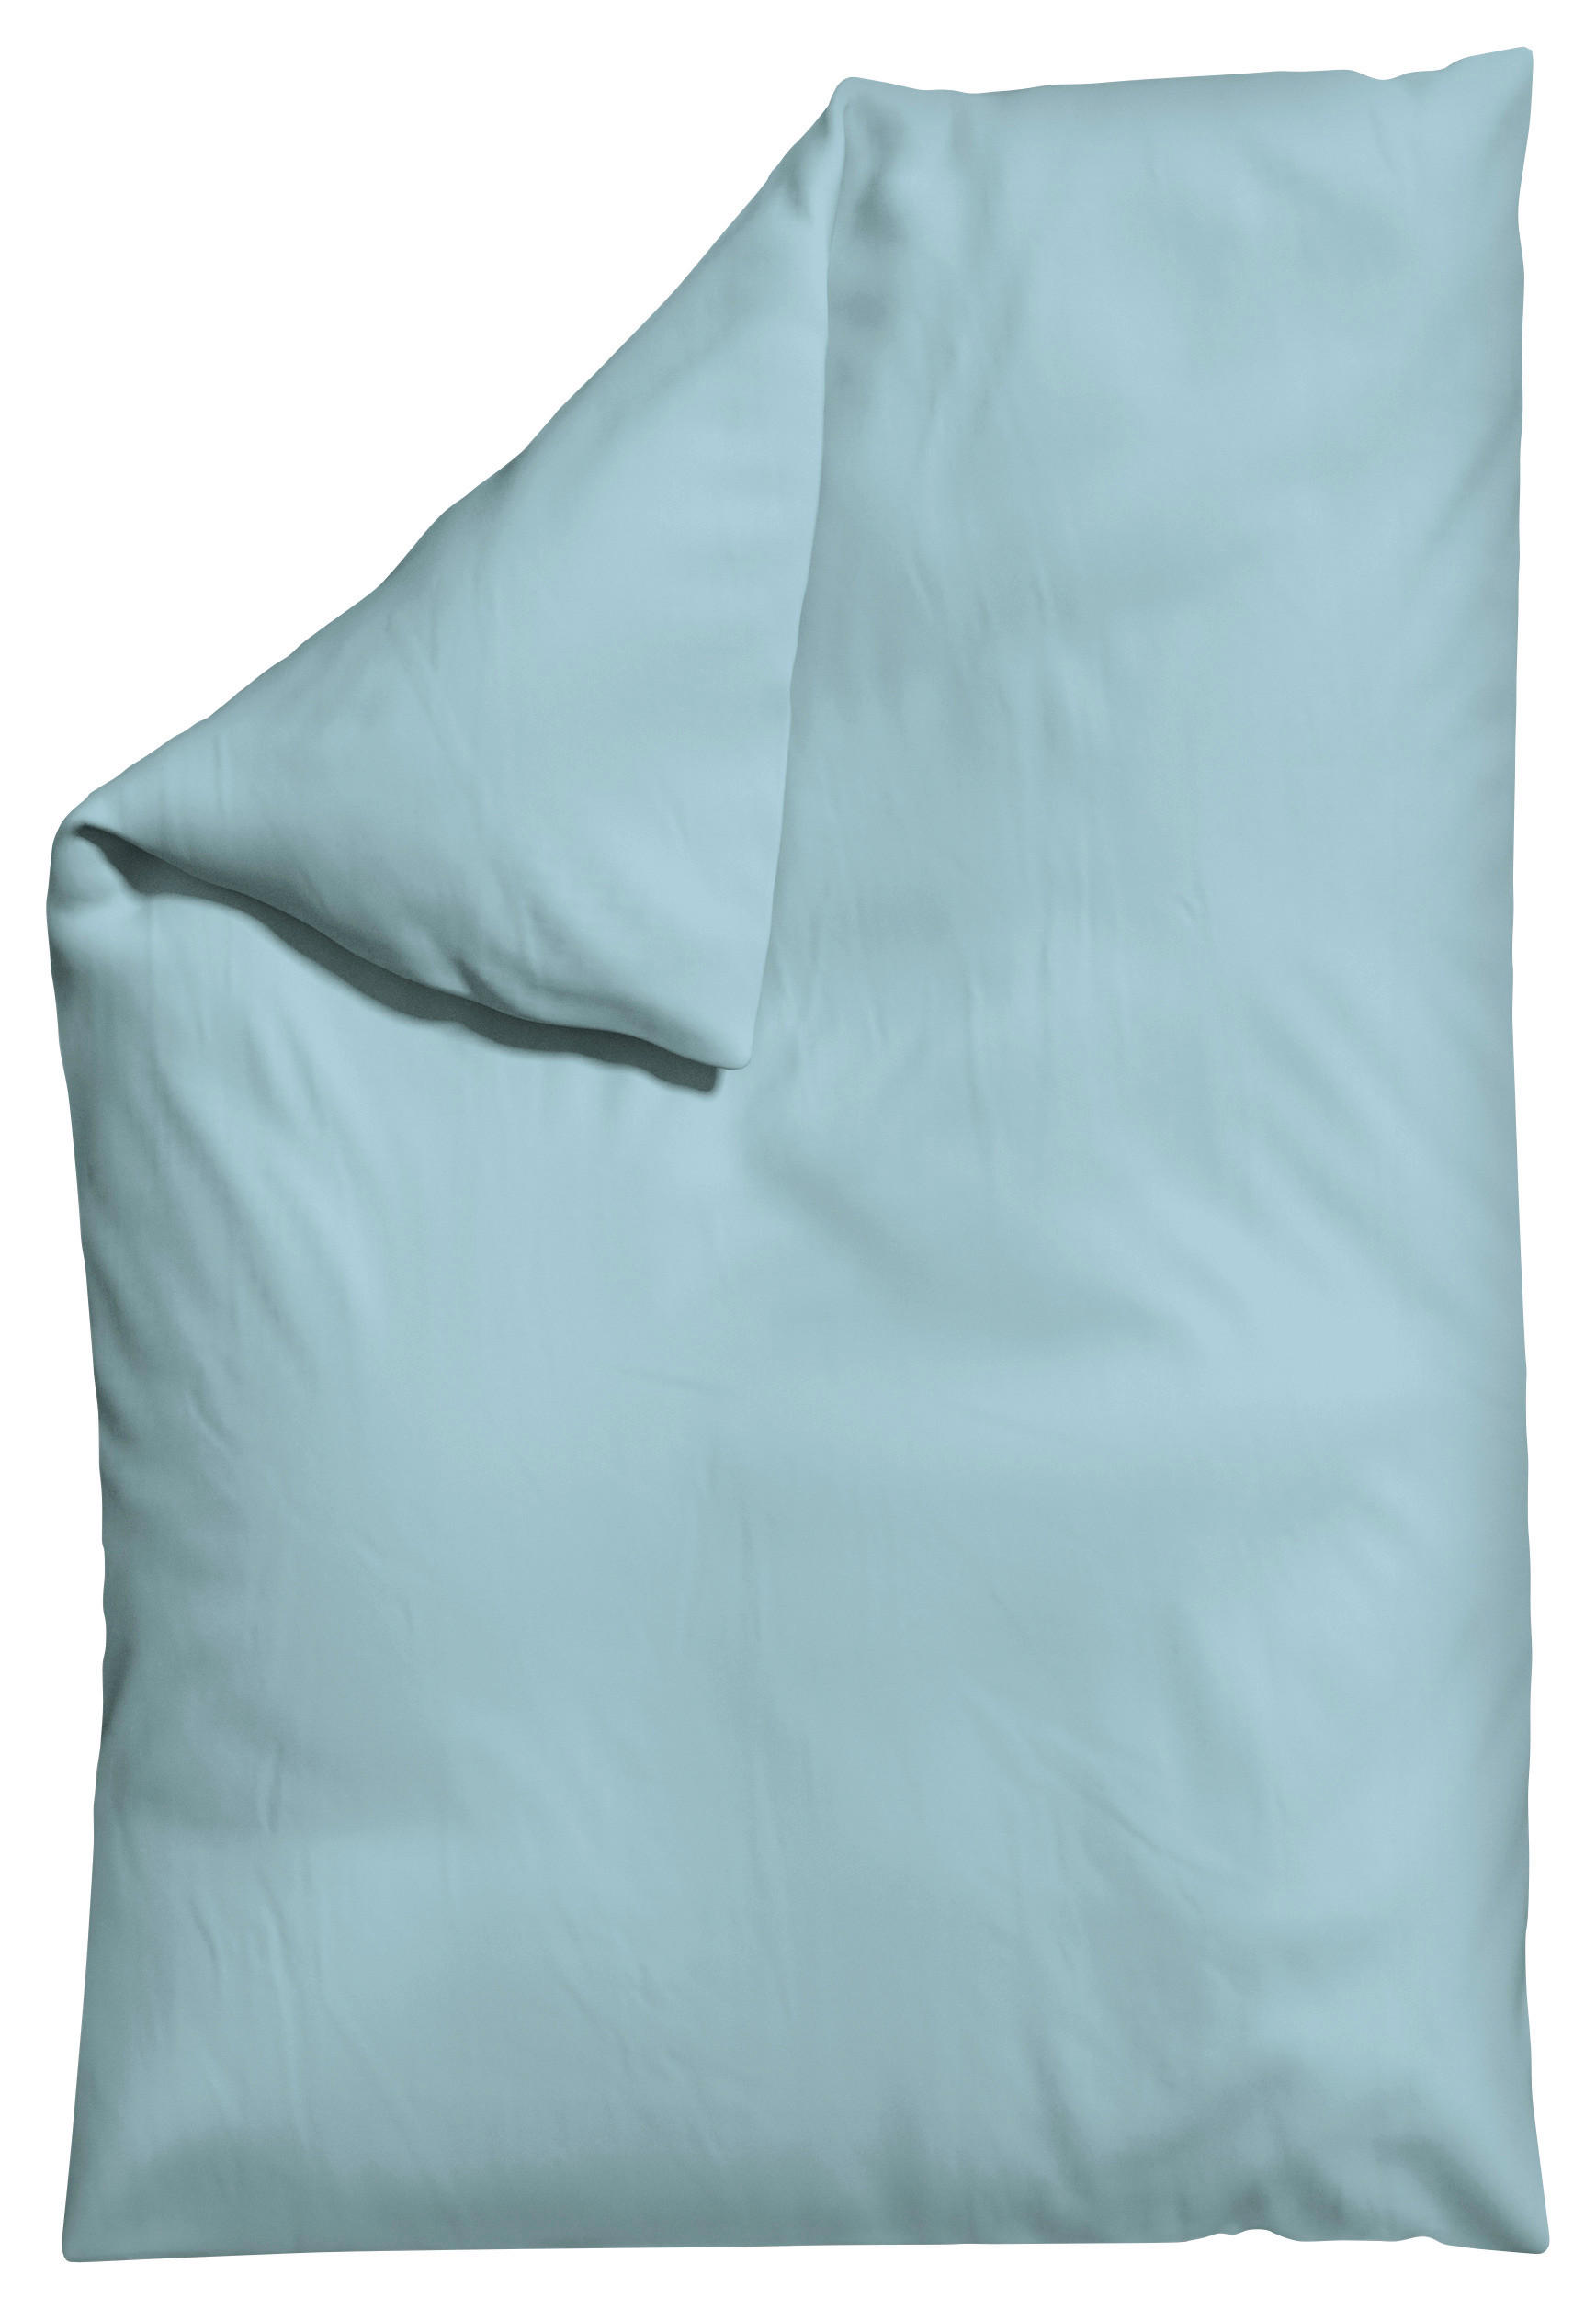 BETTDECKENBEZUG WOVEN SATIN Makosatin  - Hellblau, Basics, Textil (135-140/200cm) - Schlafgut